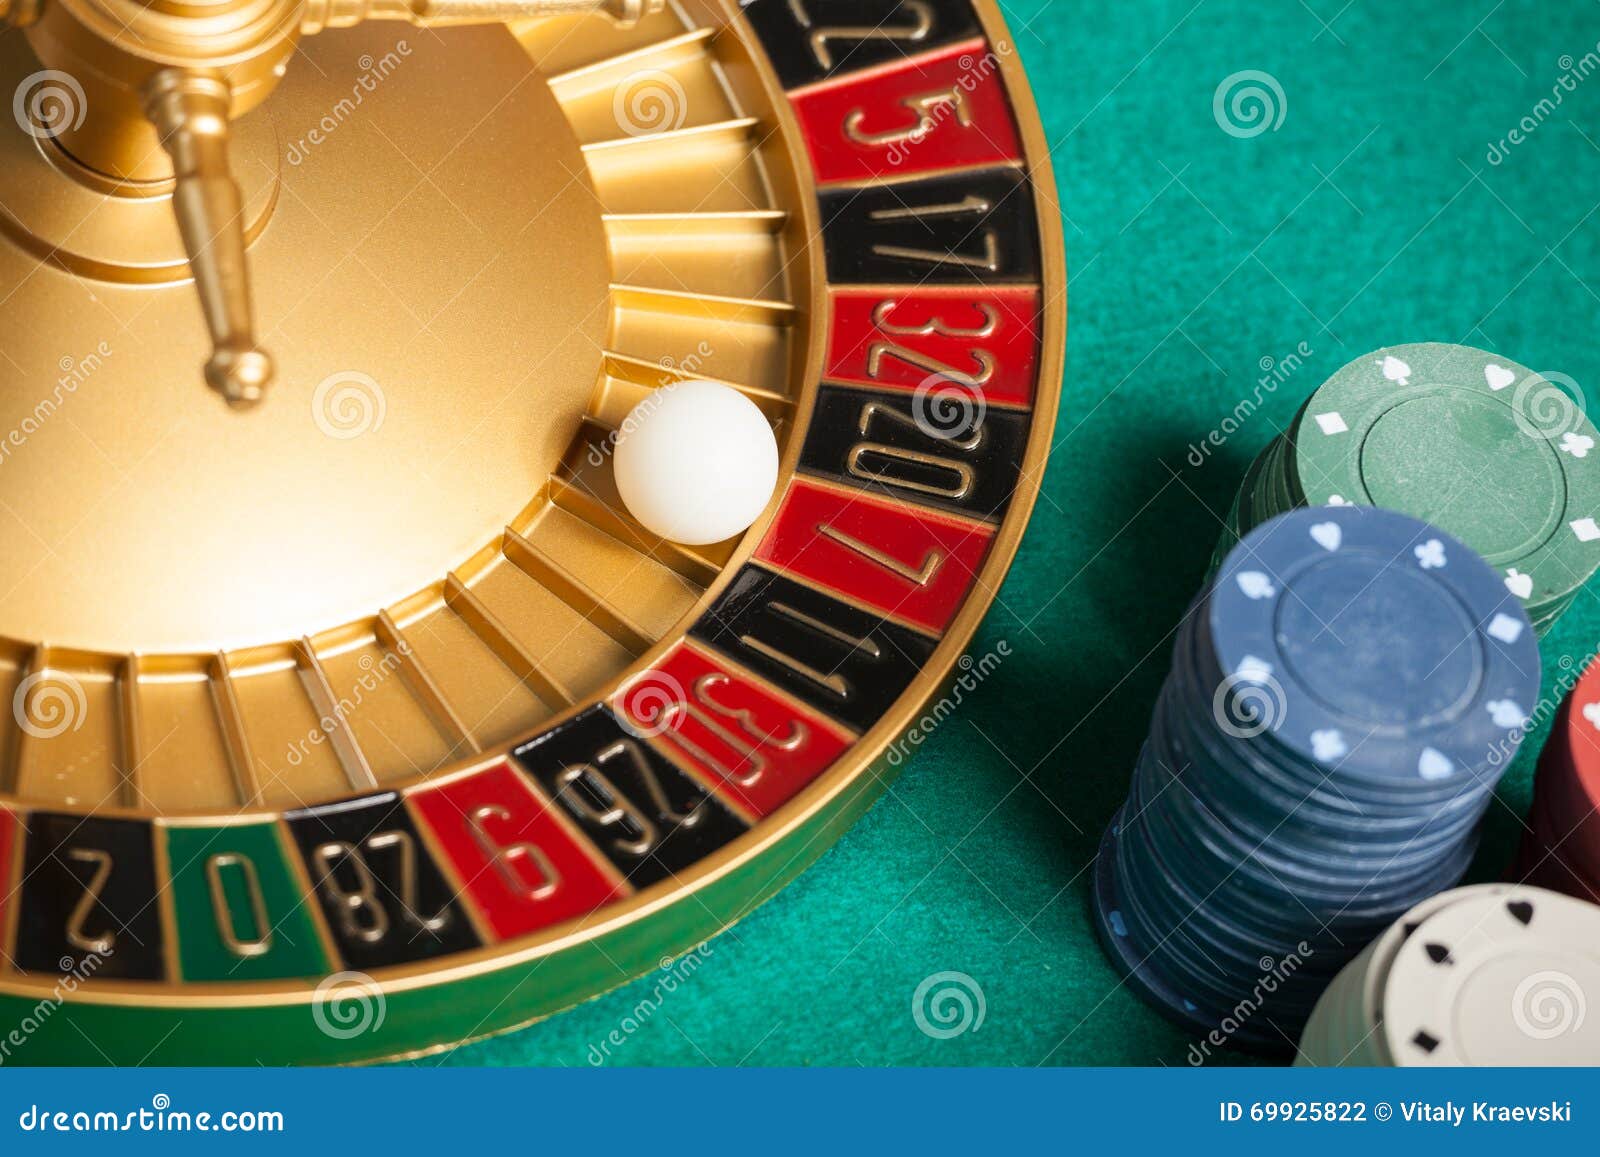 Casino Number